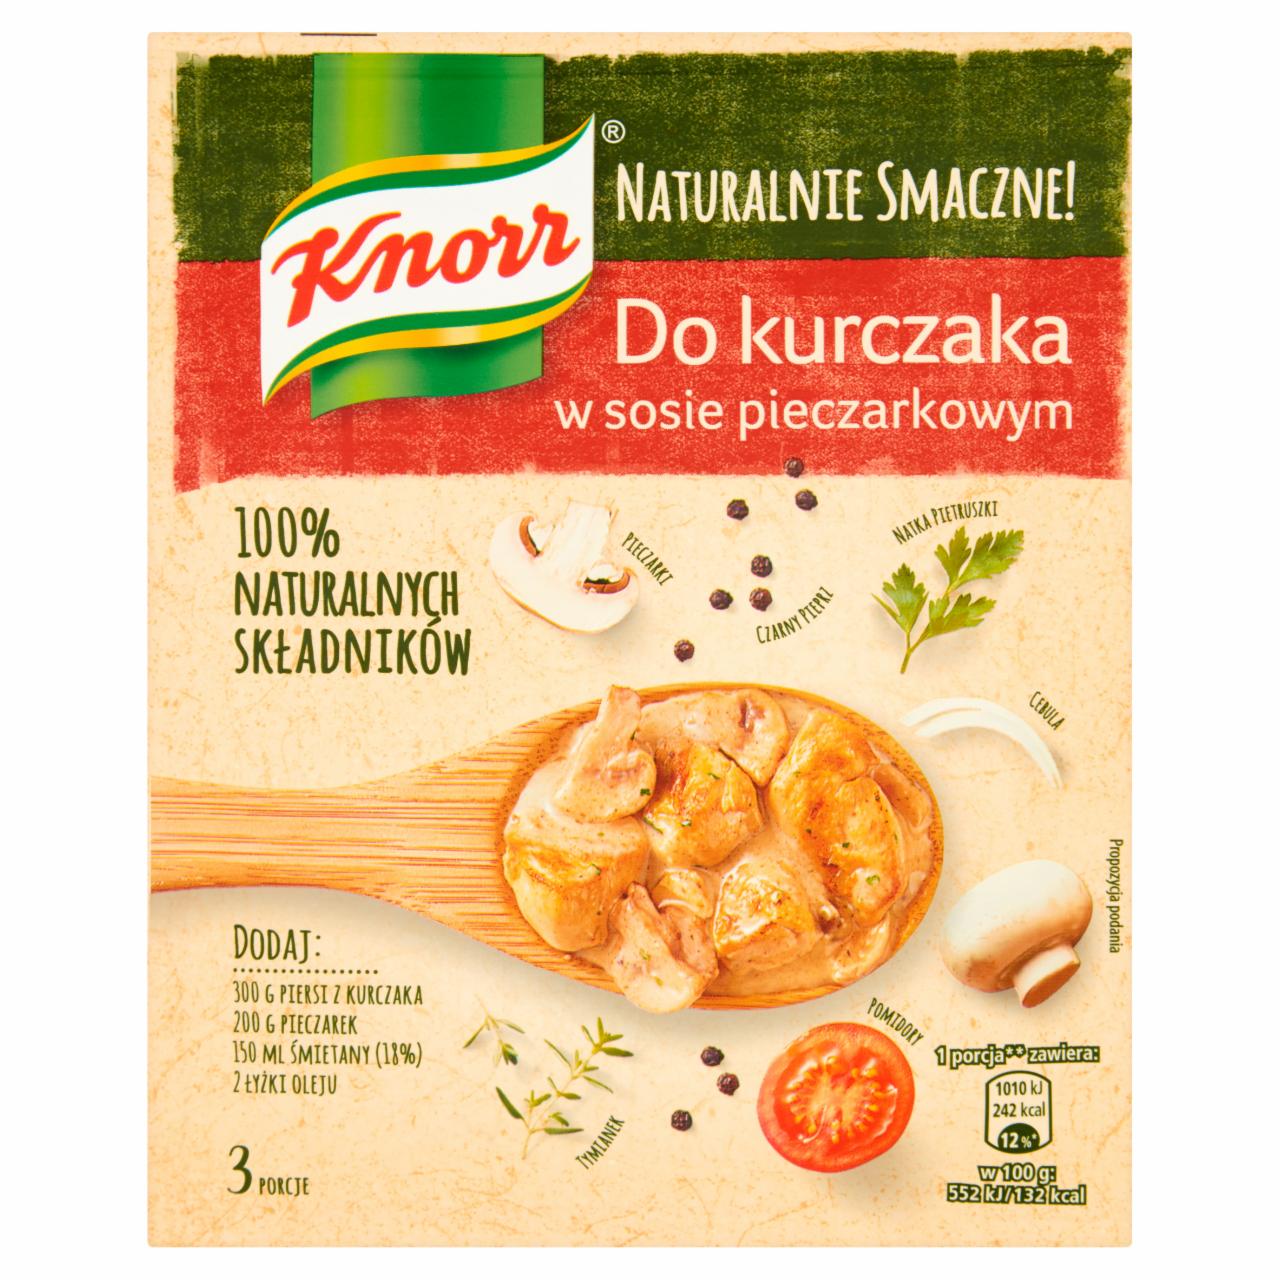 Zdjęcia - Knorr Do kurczaka w sosie pieczarkowym 32 g